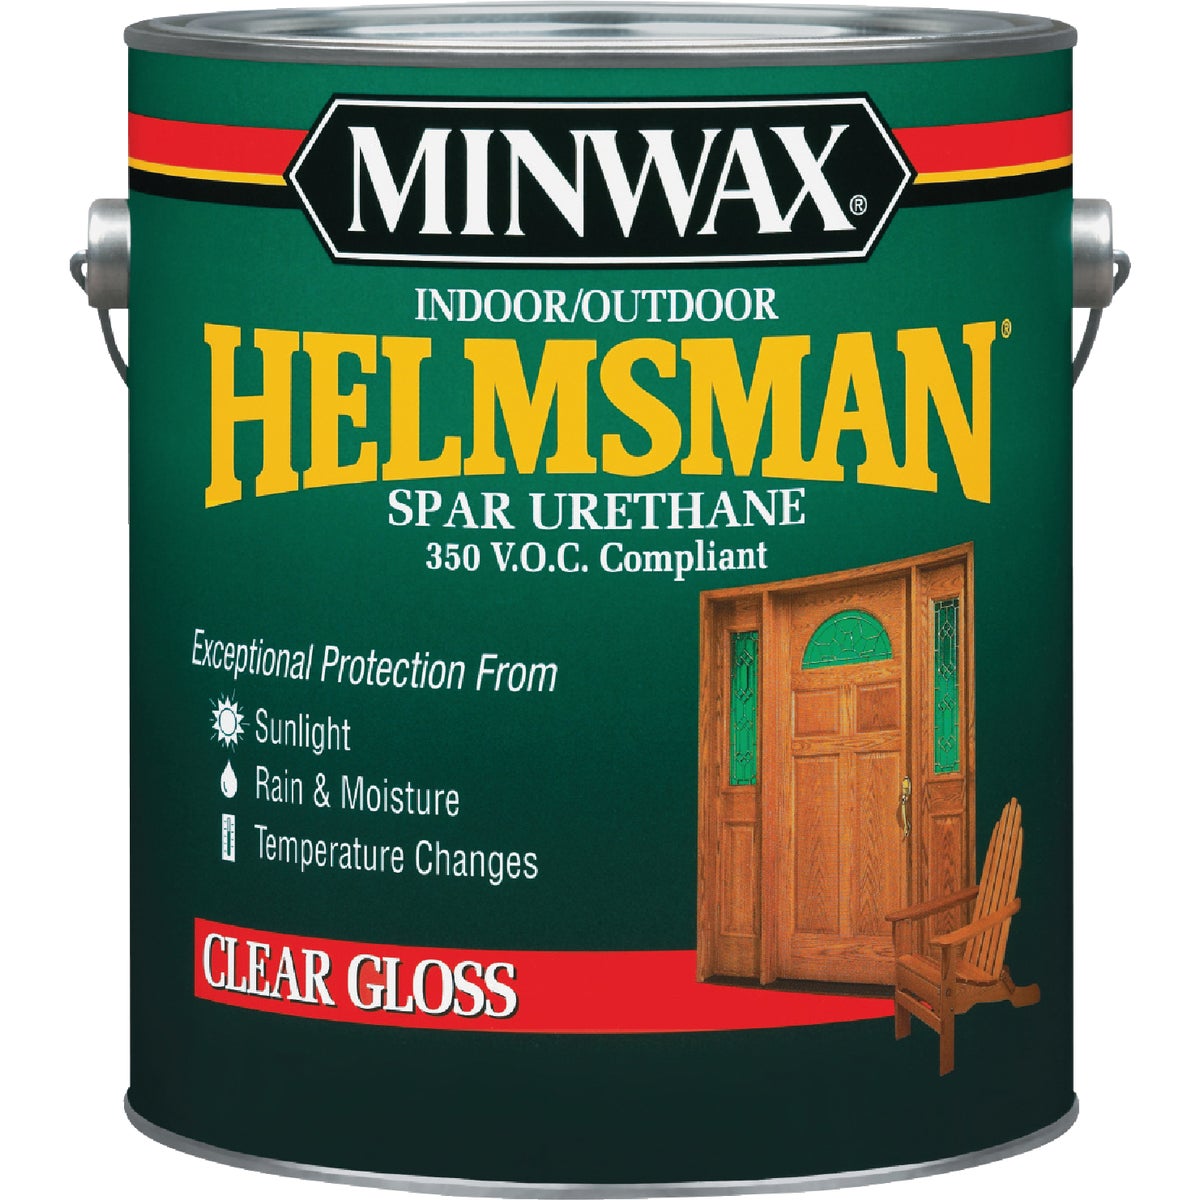 Minwax Helmsman VOC Gloss Spar Interior & Exterior Varnish, Gallon